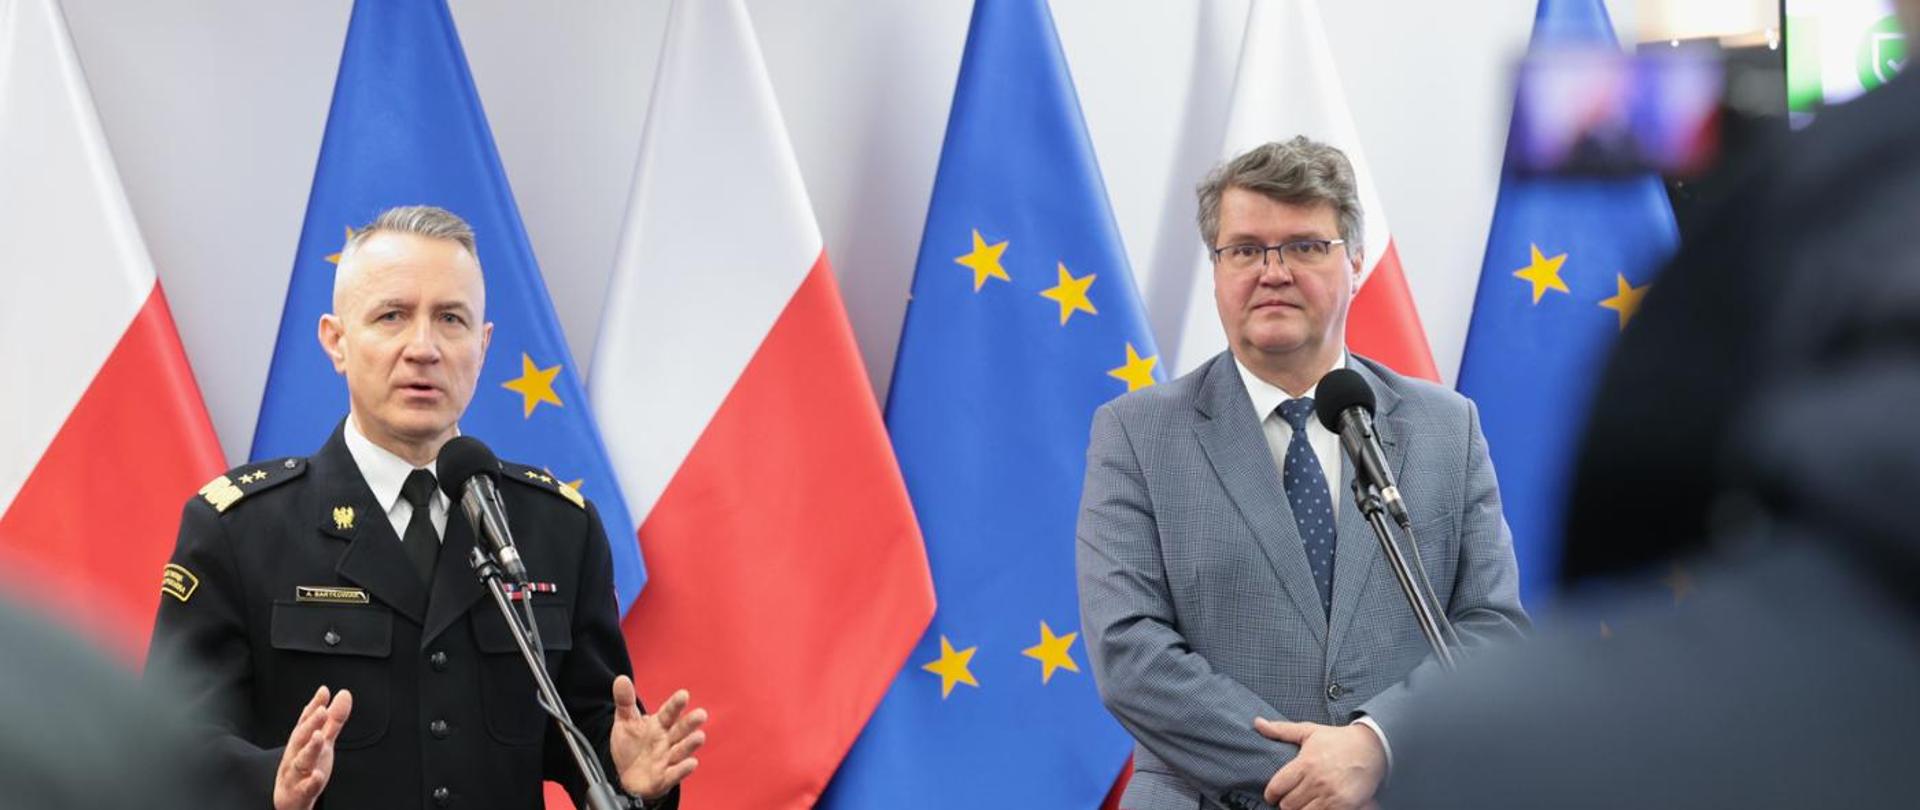 Na zdjęciu na tle flagi RP i UE przy mikrofonach stoi wiceminister Maciej Wąsik i komendant Główny gen.bryg. Andrzej Bartkowiak podczas konferencji prasowej